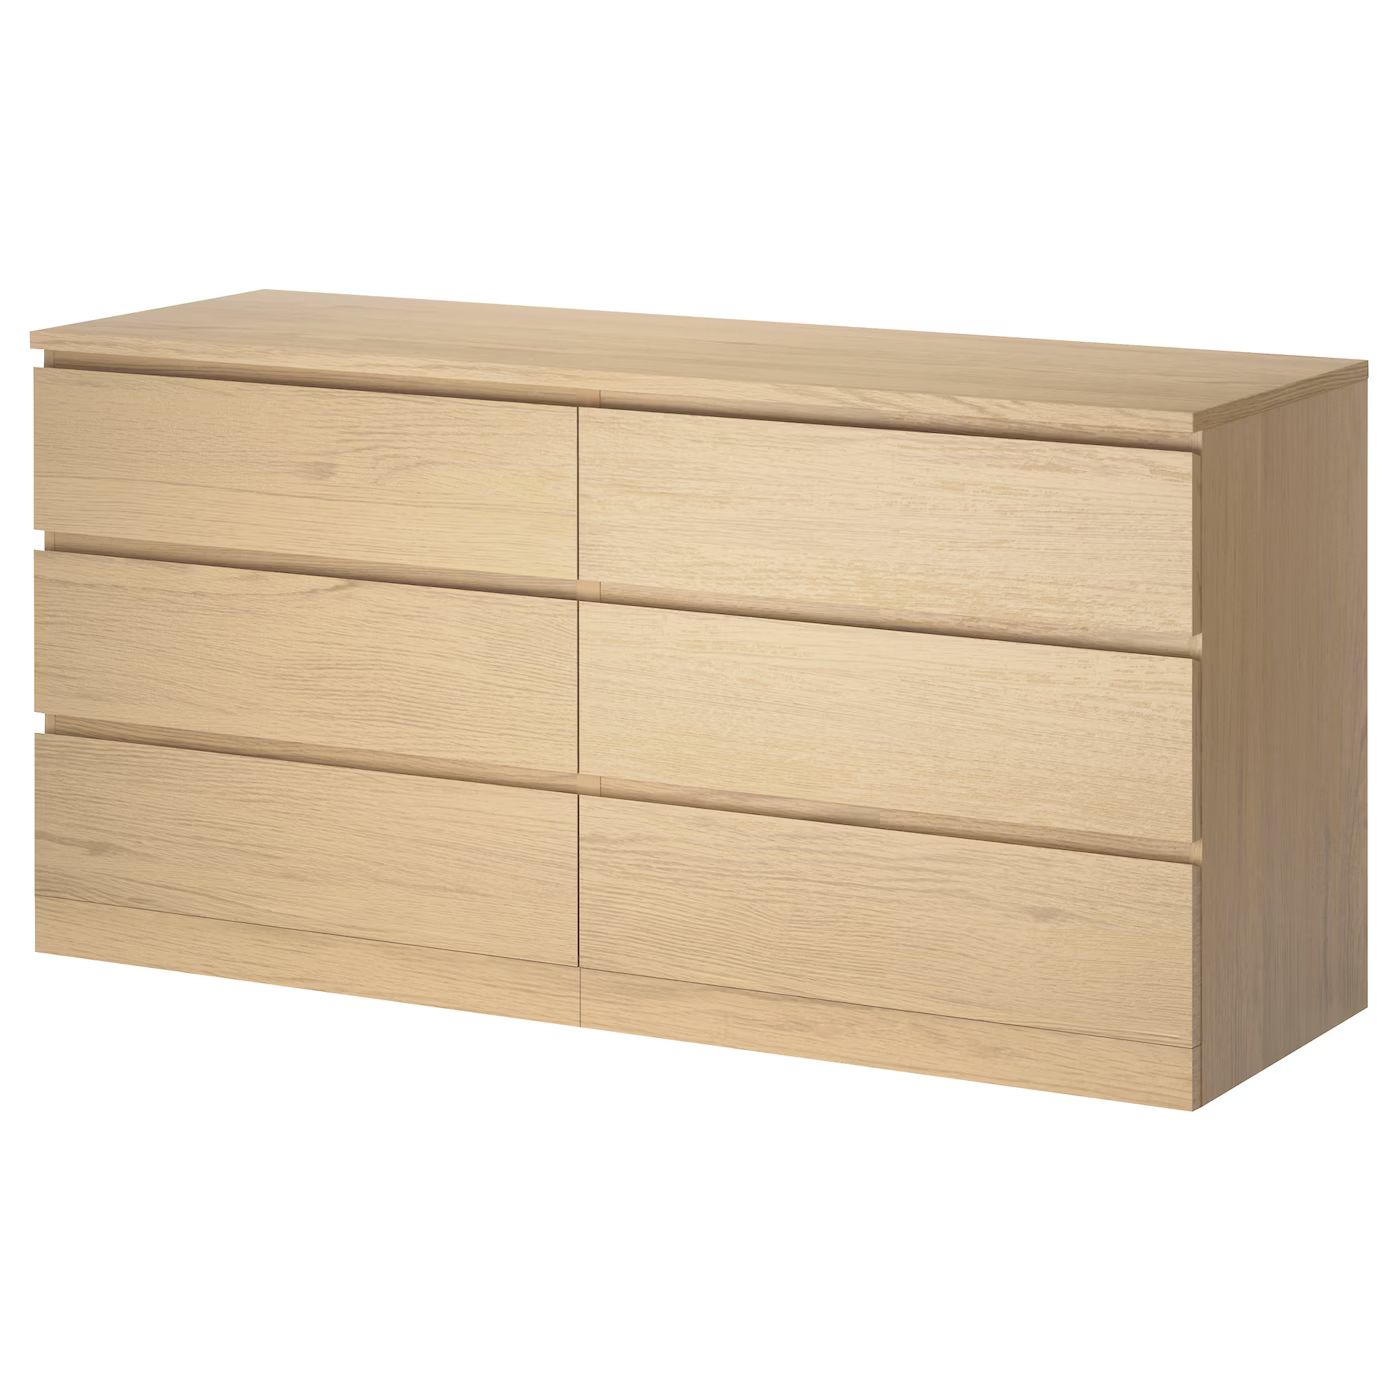 MALM Kommode mit 6 Schubladen, Eichenfurnier weiß lasiert, 160x78 cm - IKEA Deutschland | IKEA (DE)